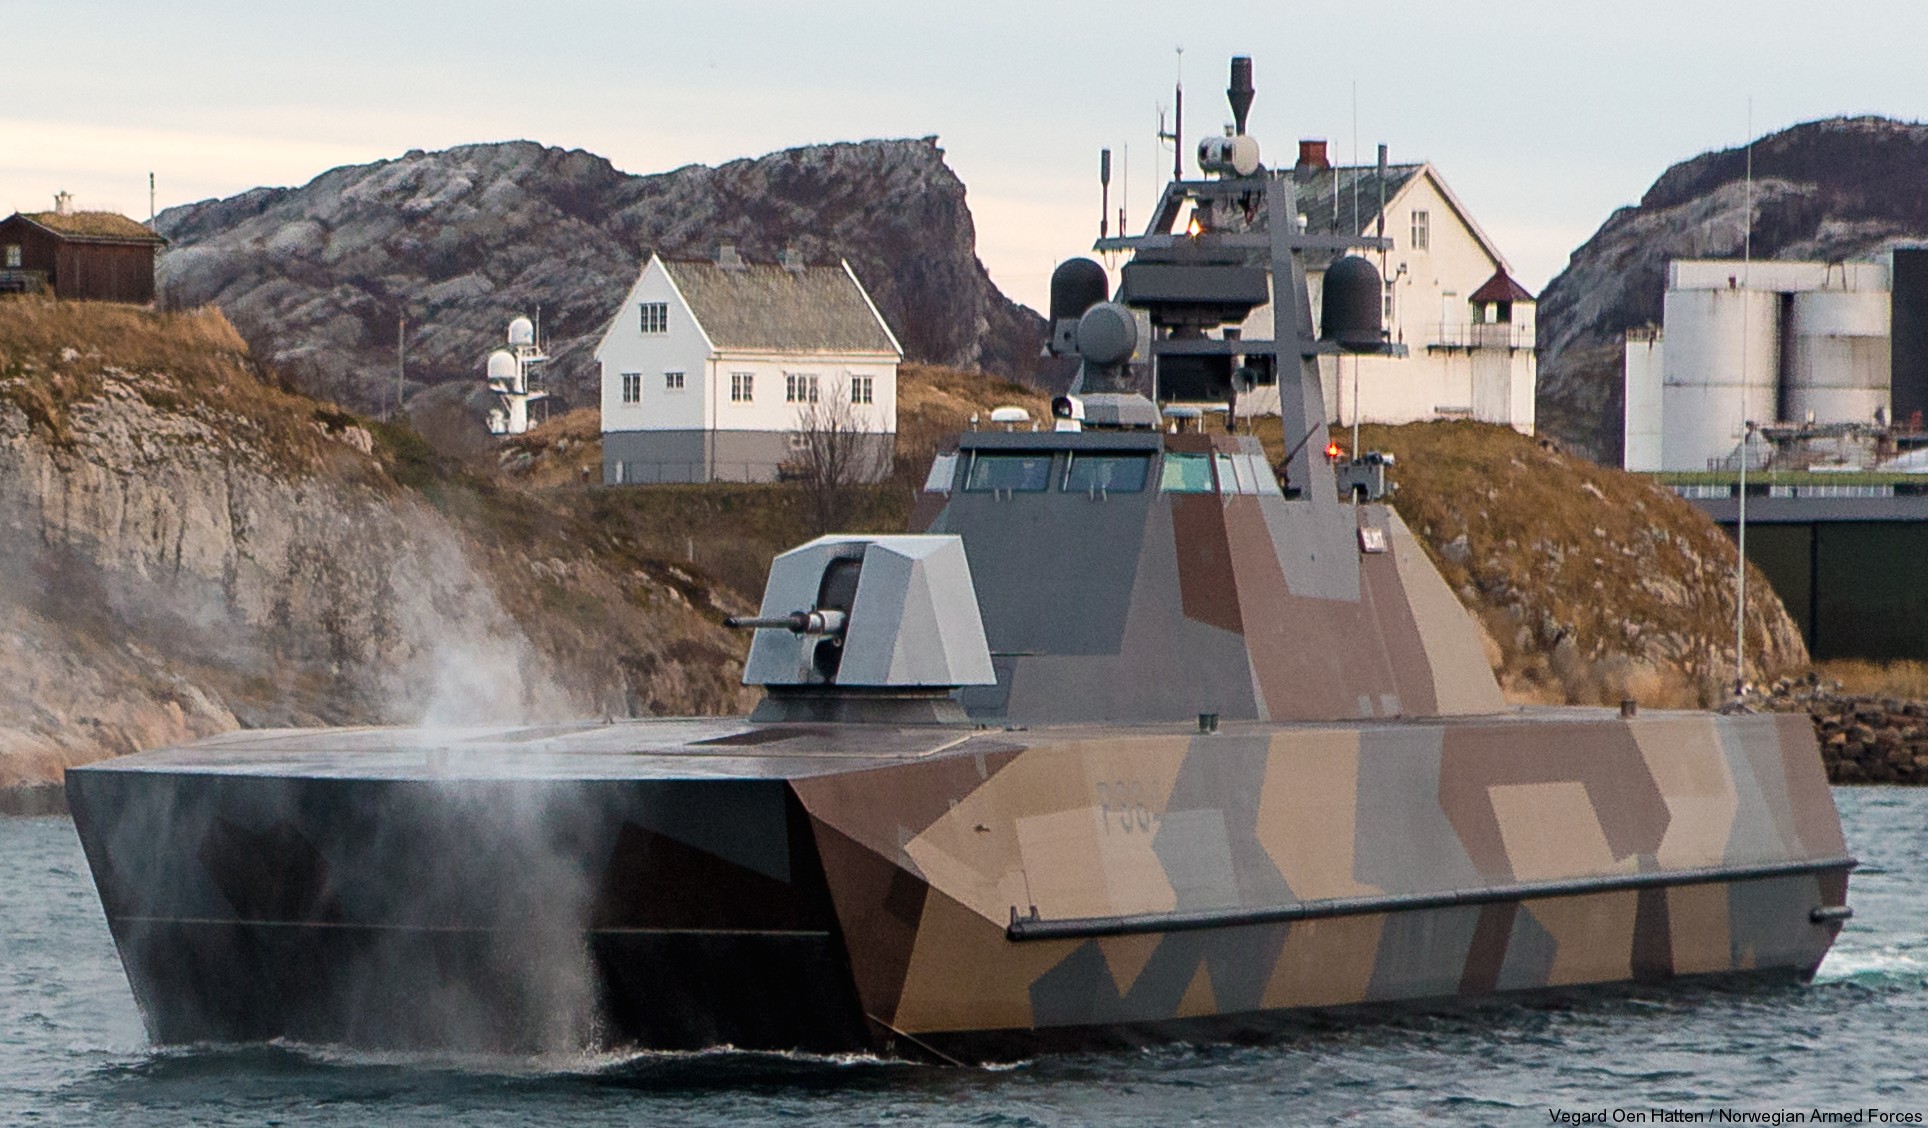 p-964 glimt knm hnoms skjold class corvette royal norwegian navy sjoforsvaret 04